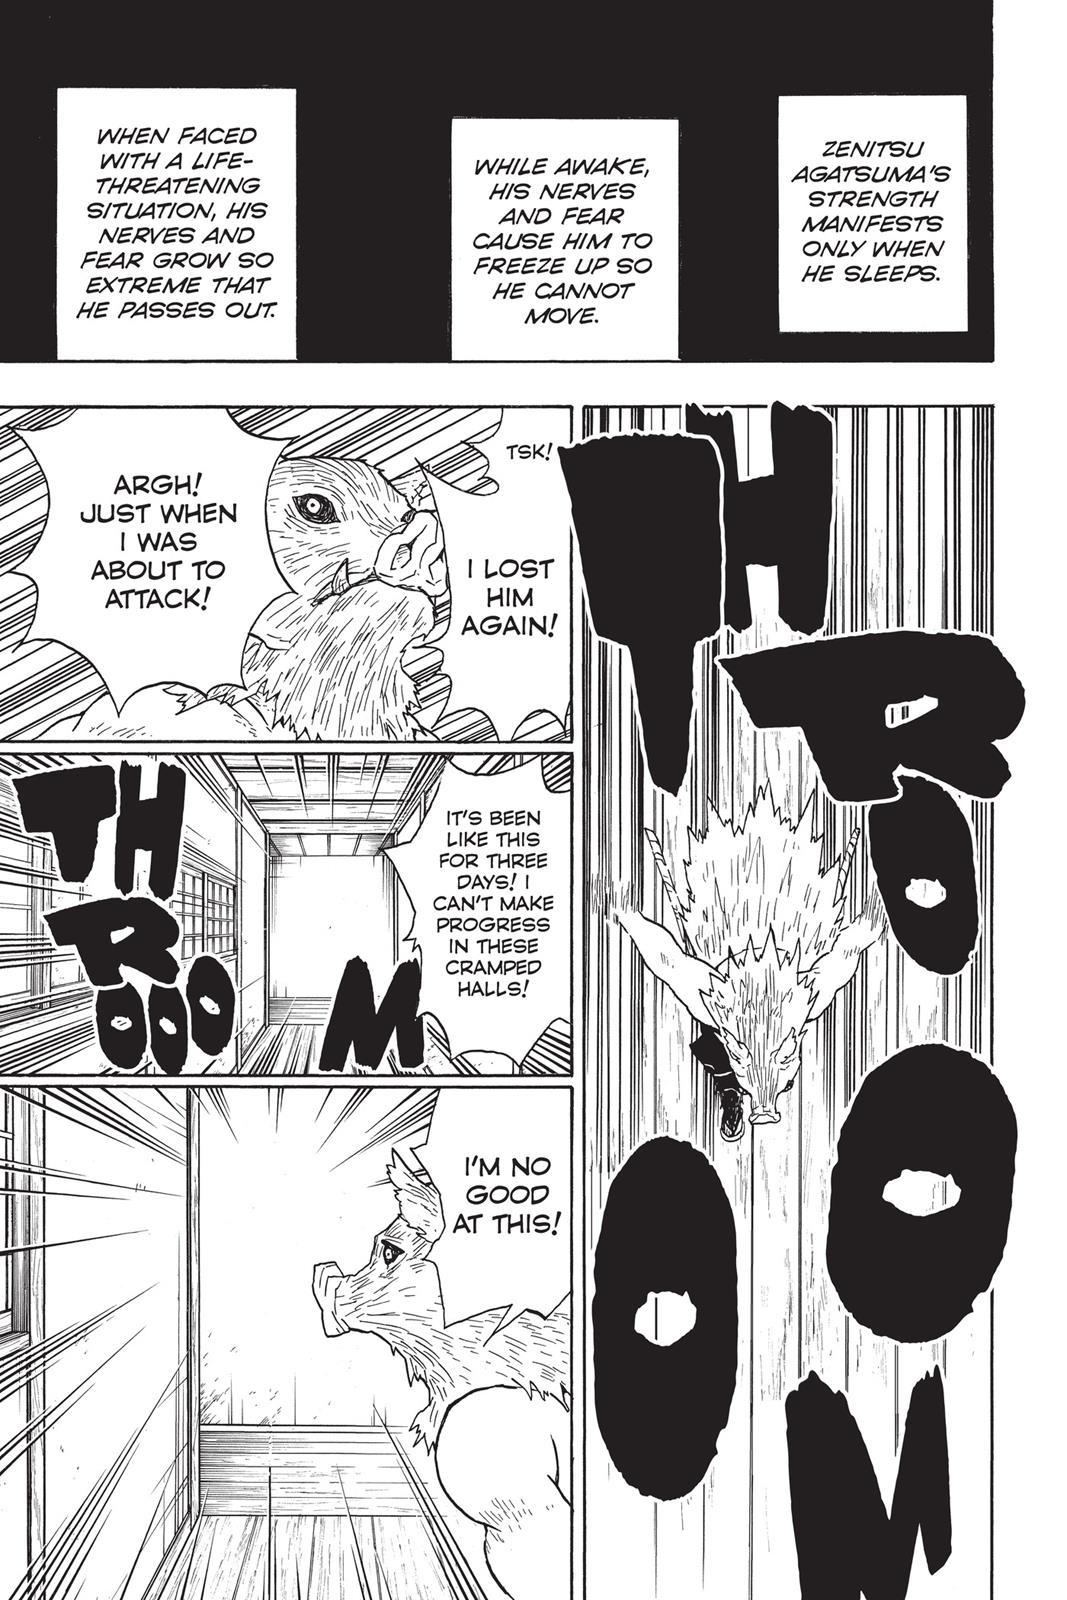 Demon Slayer Manga Manga Chapter - 23 - image 10